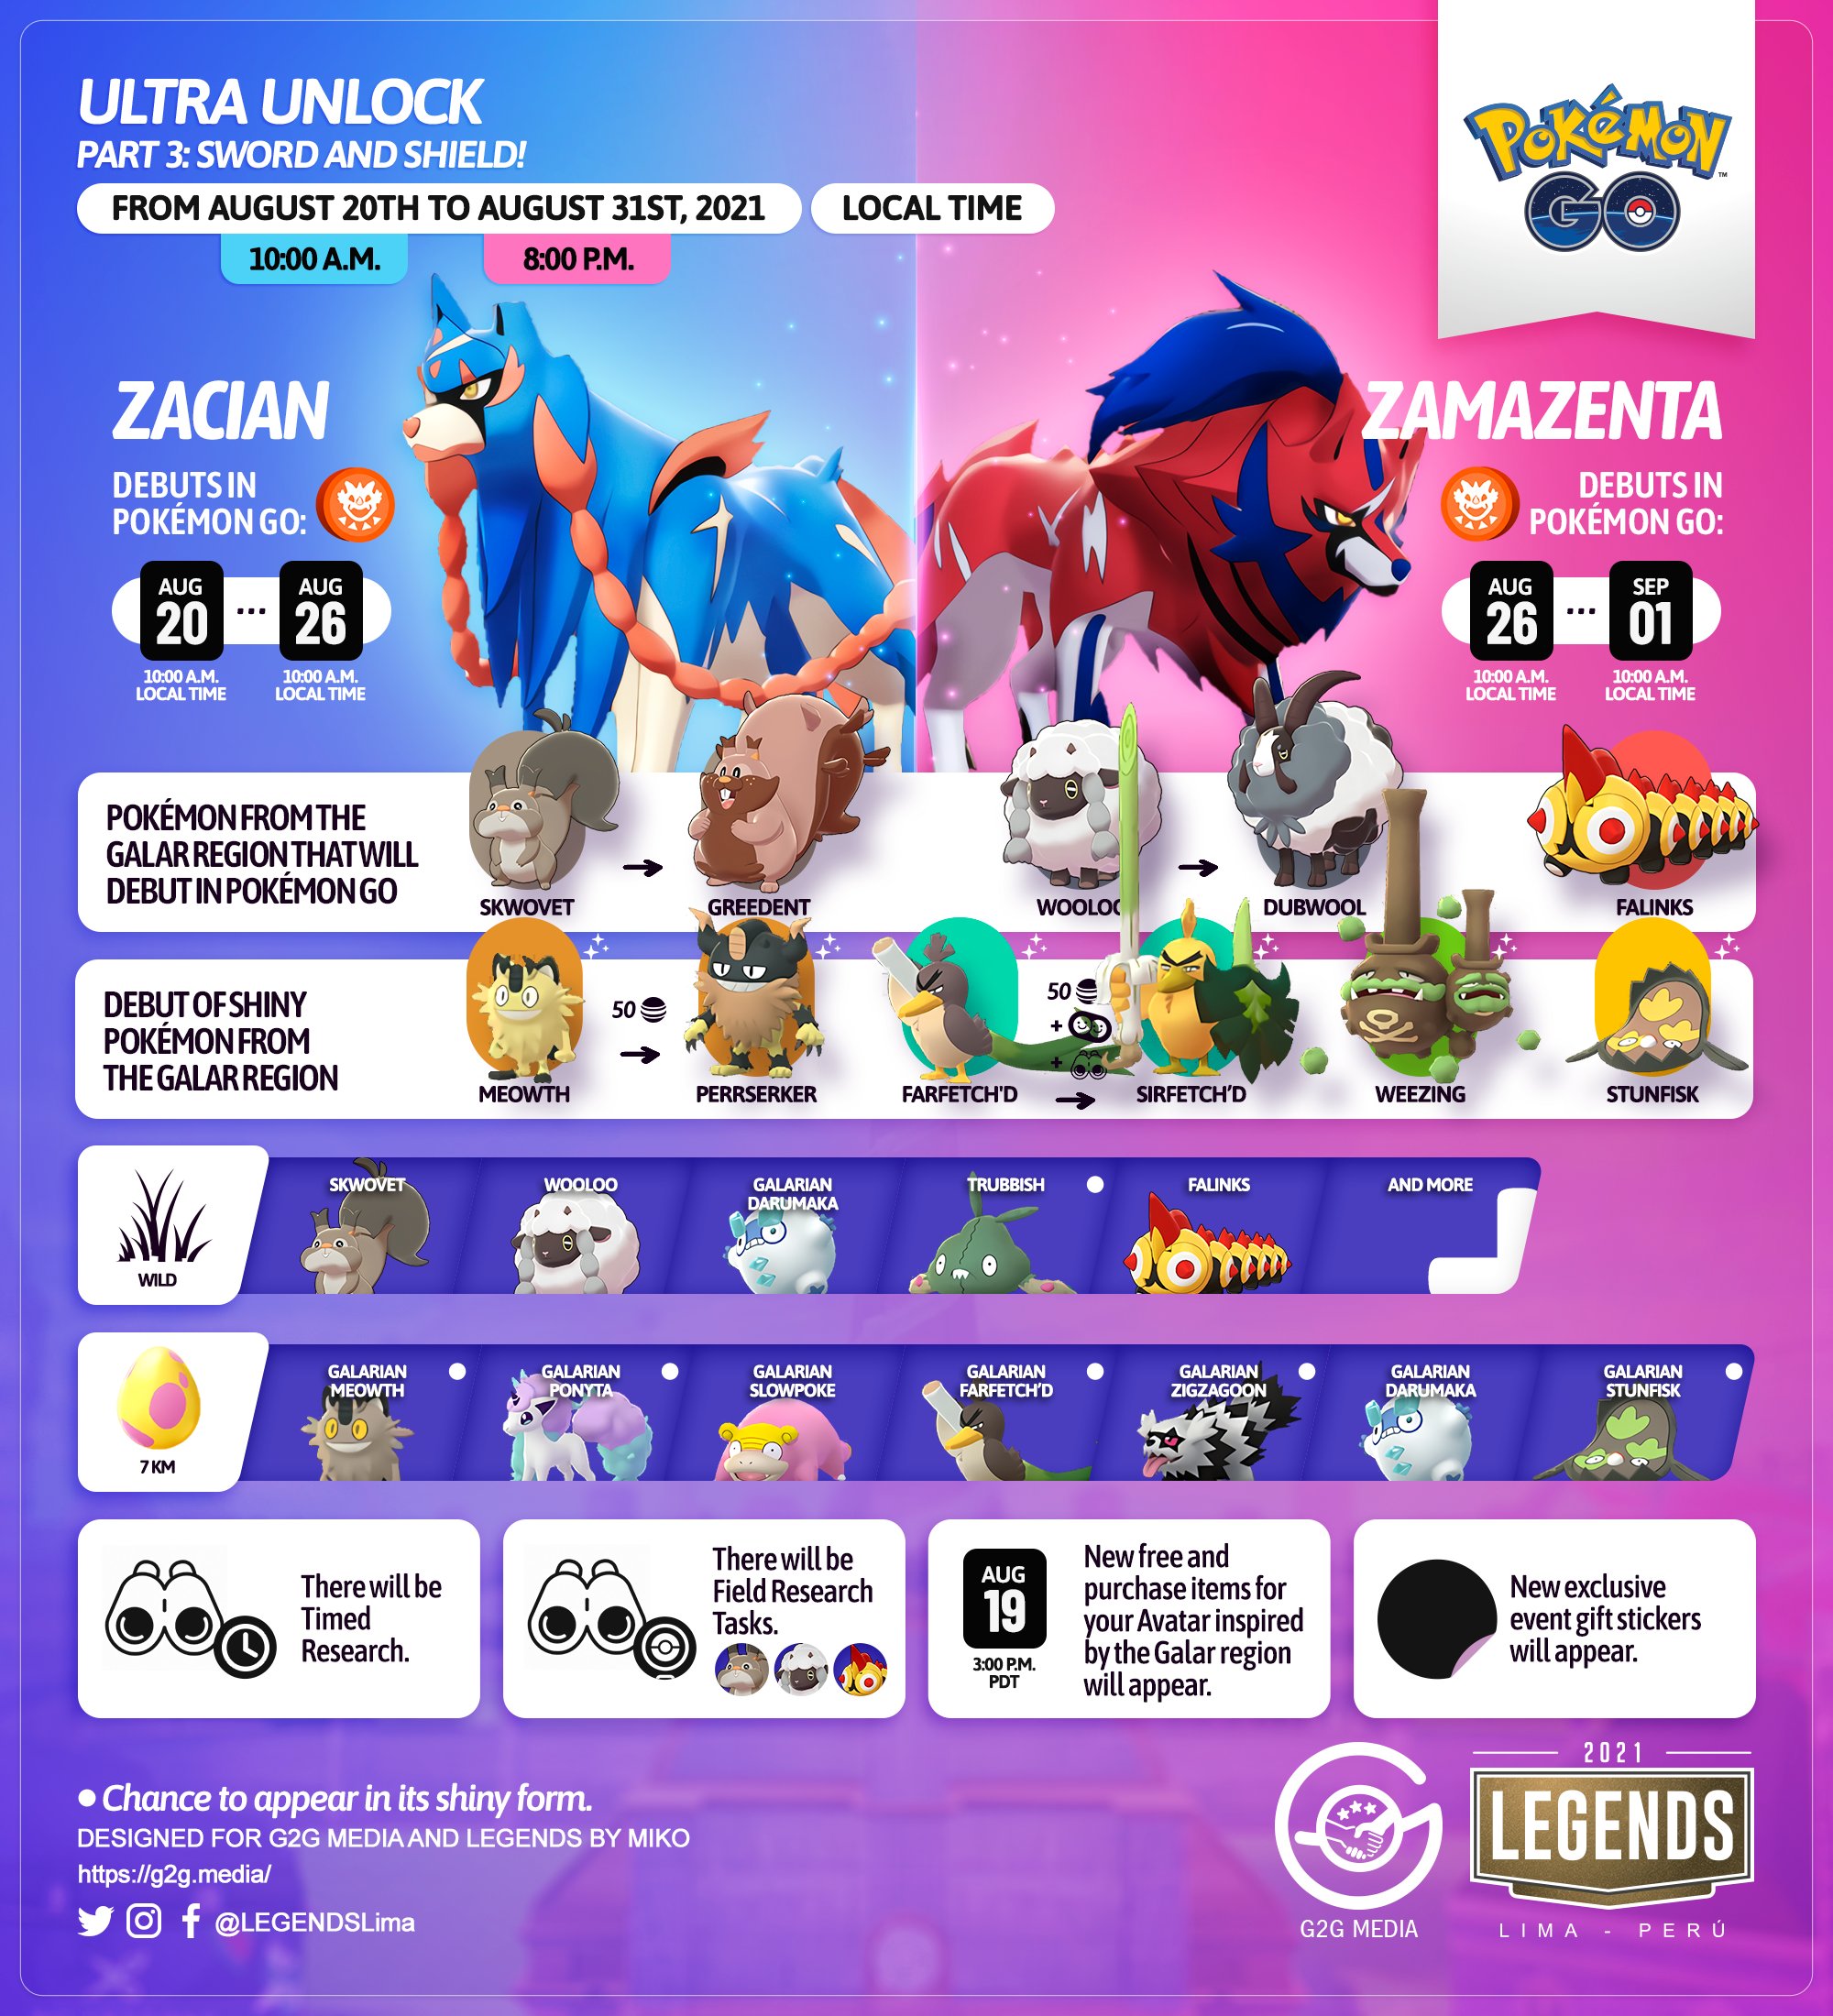 The Legendary Zacian Set To Arrive Tomorrow In Pokémon GO